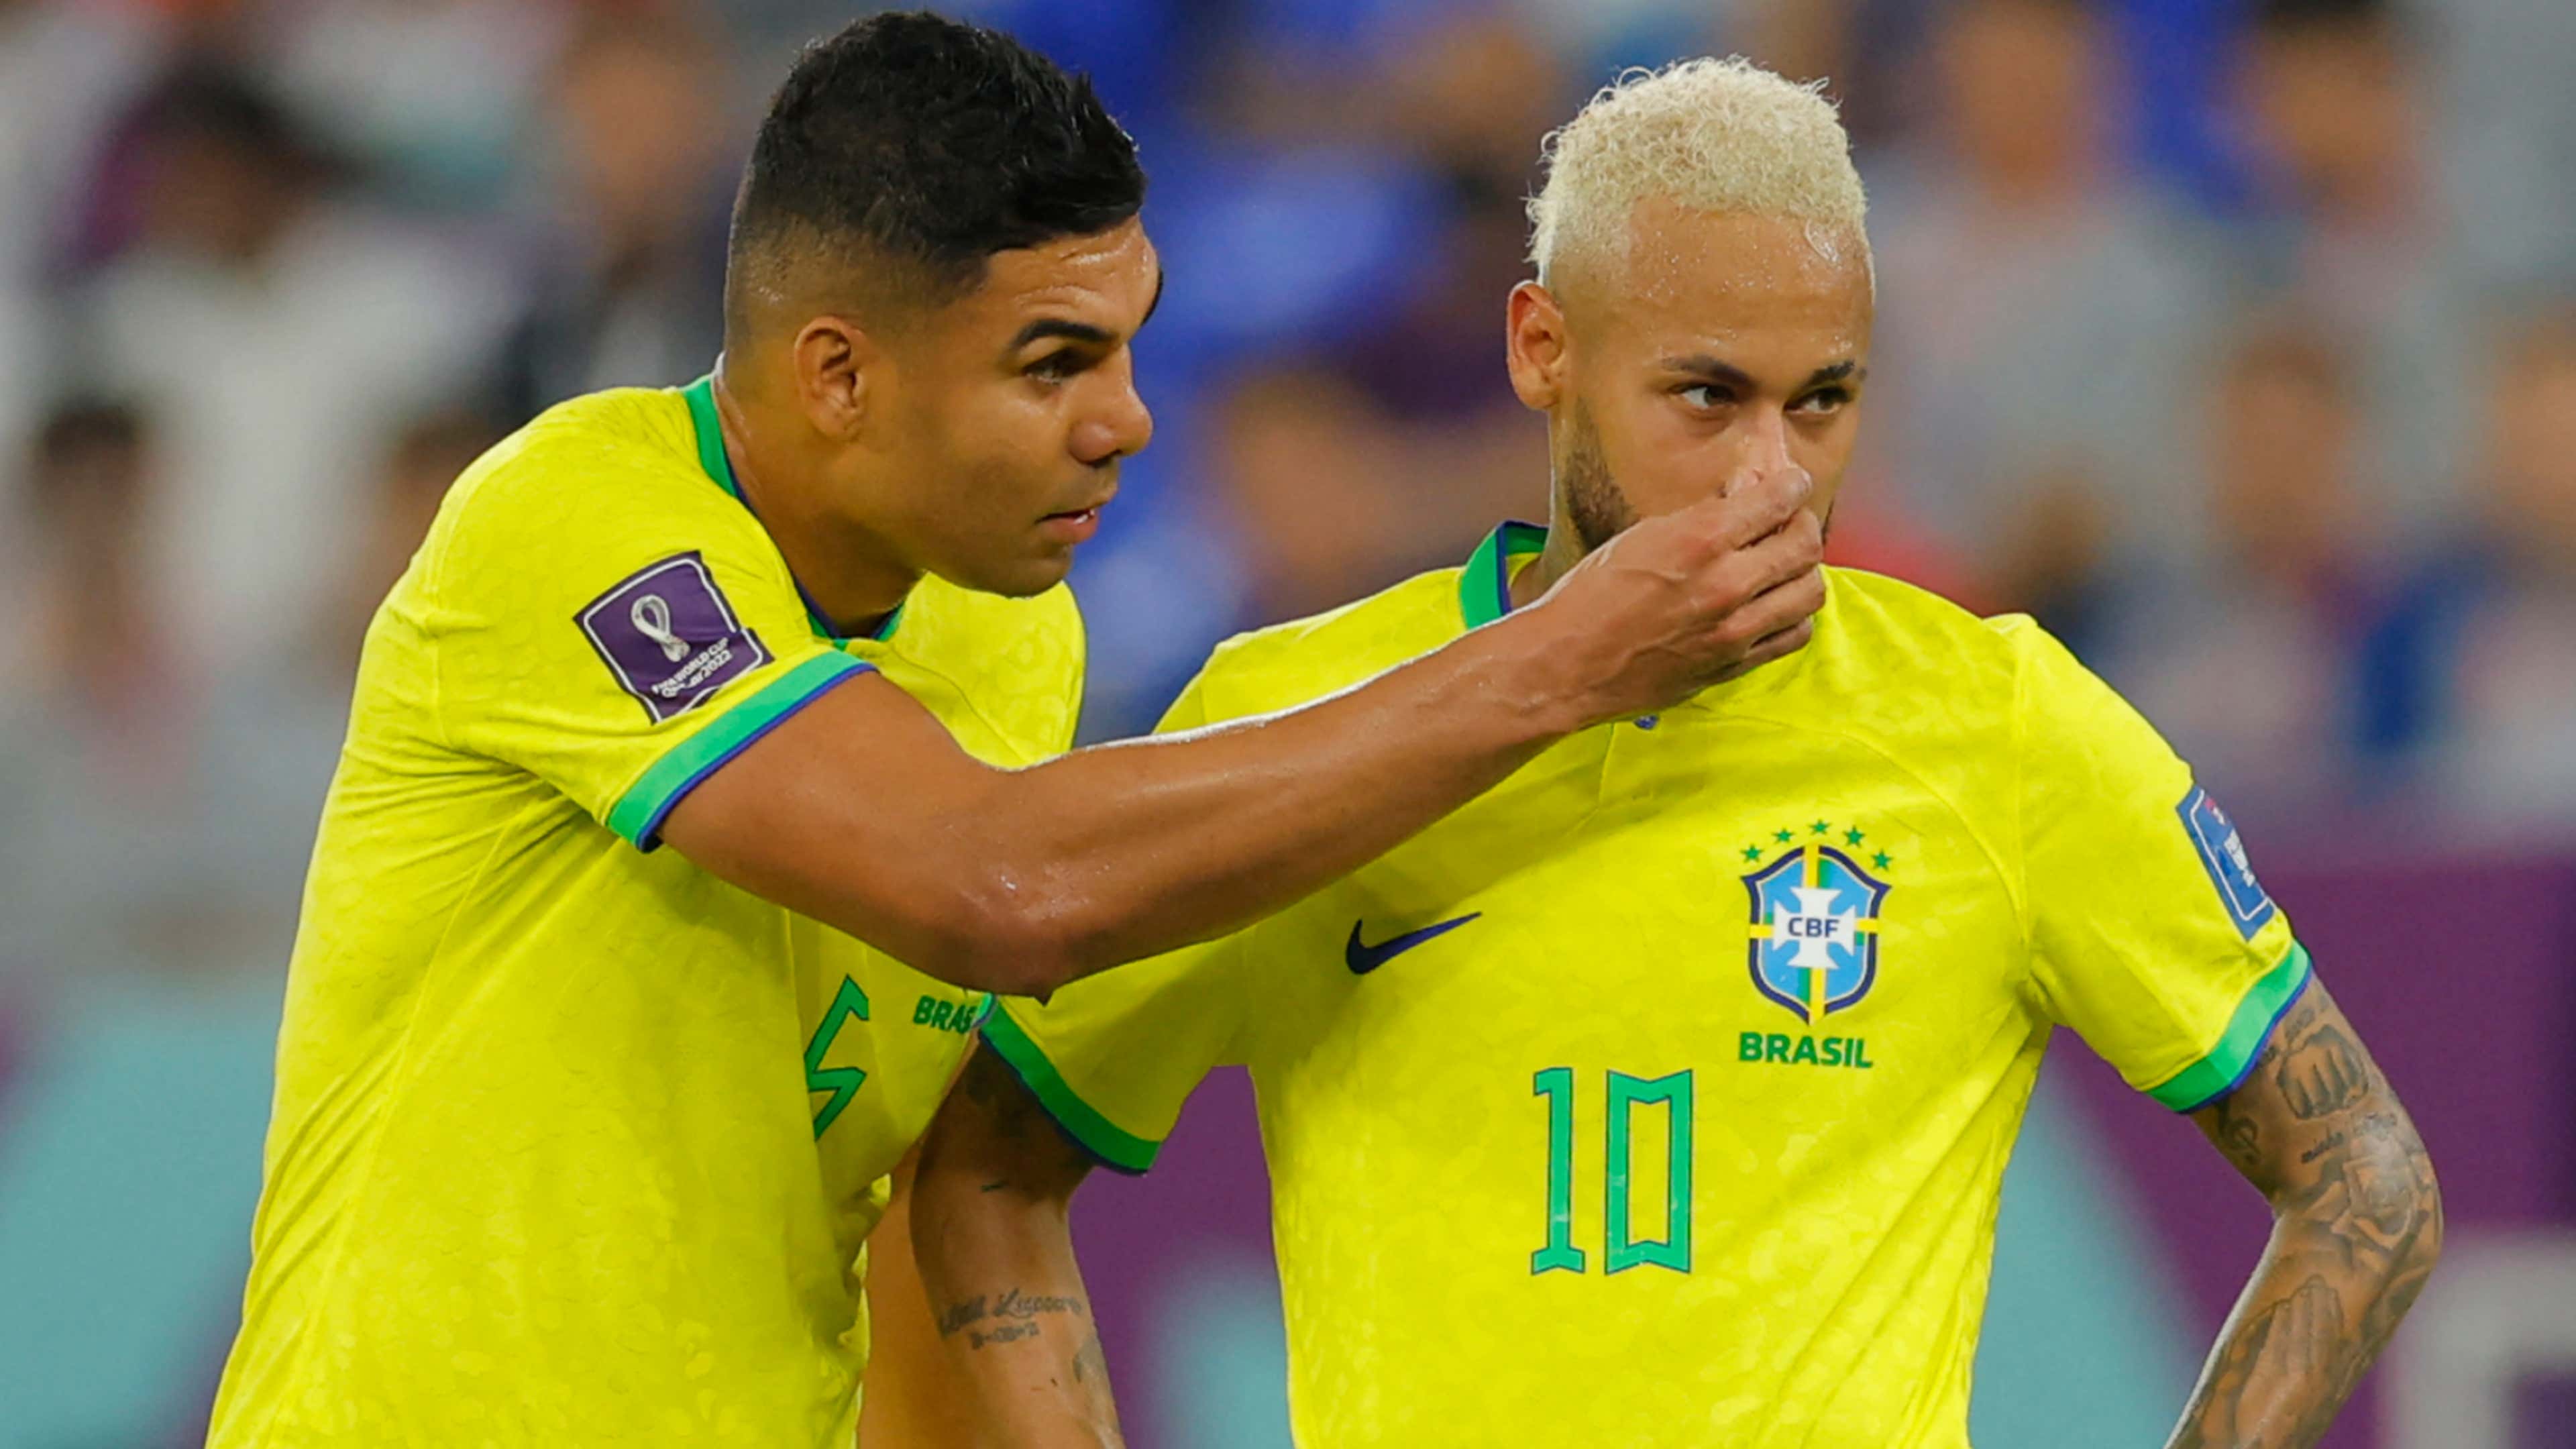 Nova camisa da seleção brasileira: quando será lançada, fotos que